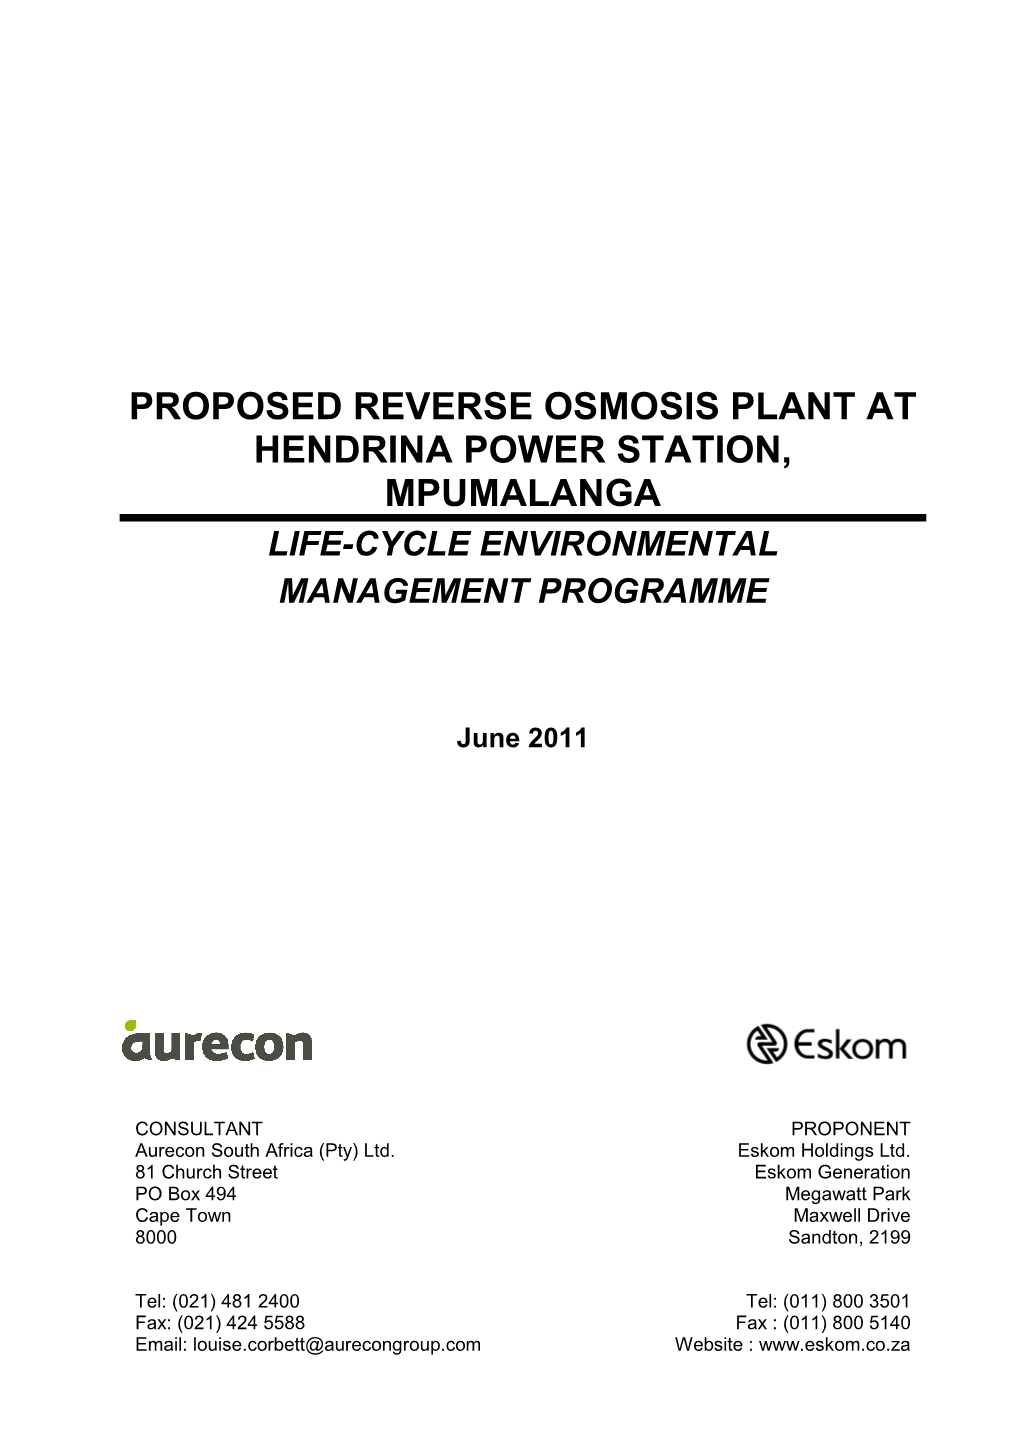 Proposed Reverse Osmosis Plant at Hendrina Power Station, Mpumalanga Life-Cycle Environmental